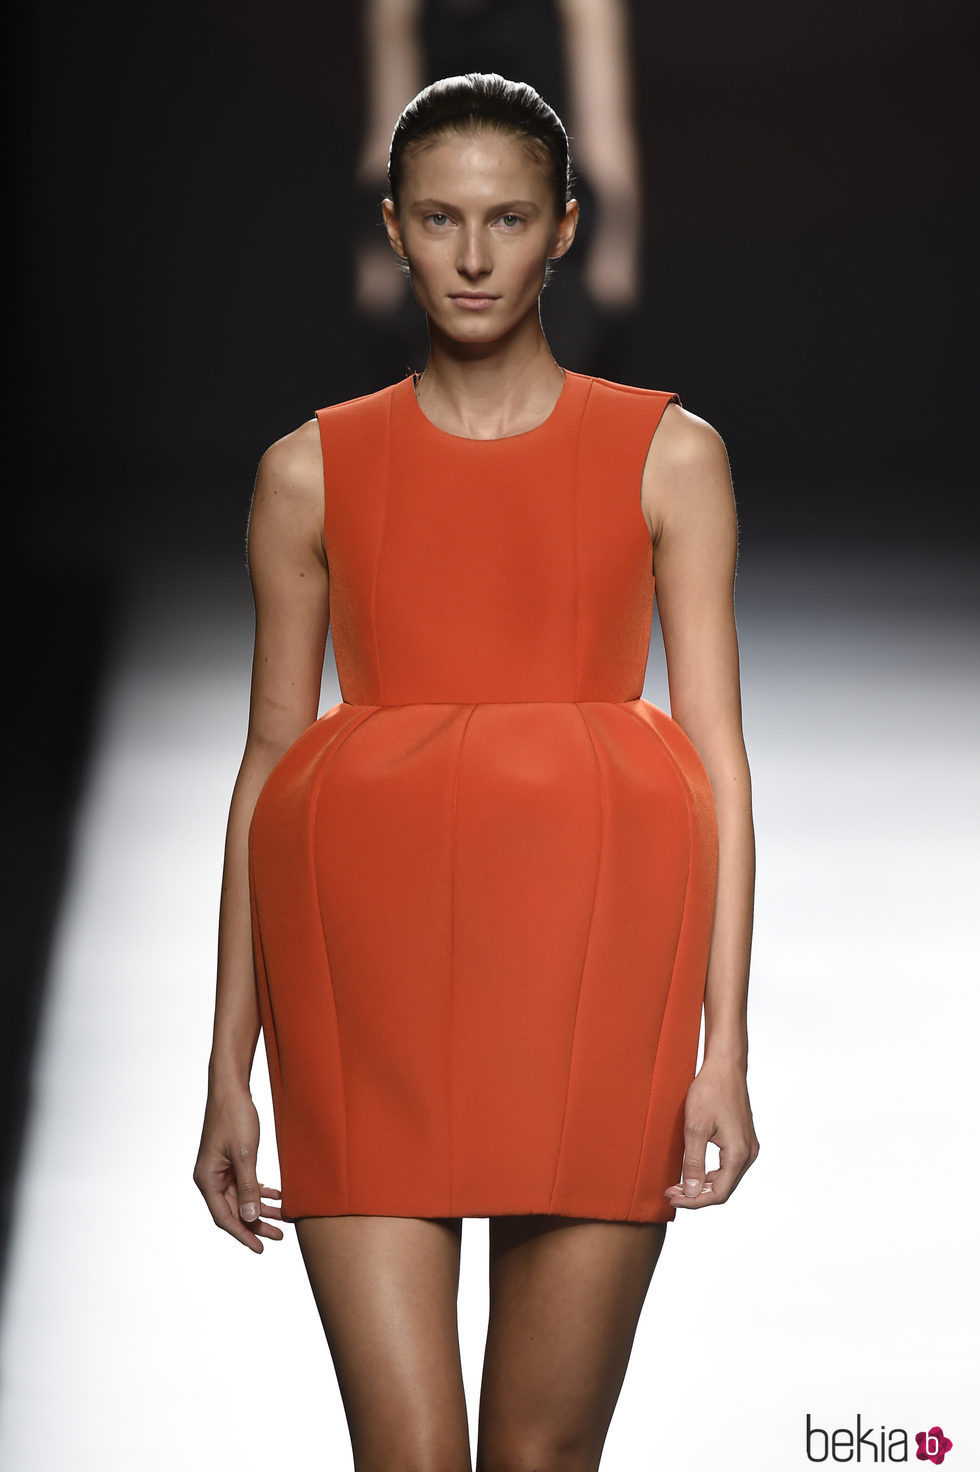 Vestido corto de color butano de Amaya Arzuaga primavera/verano 2017 Madrid Fashion Week